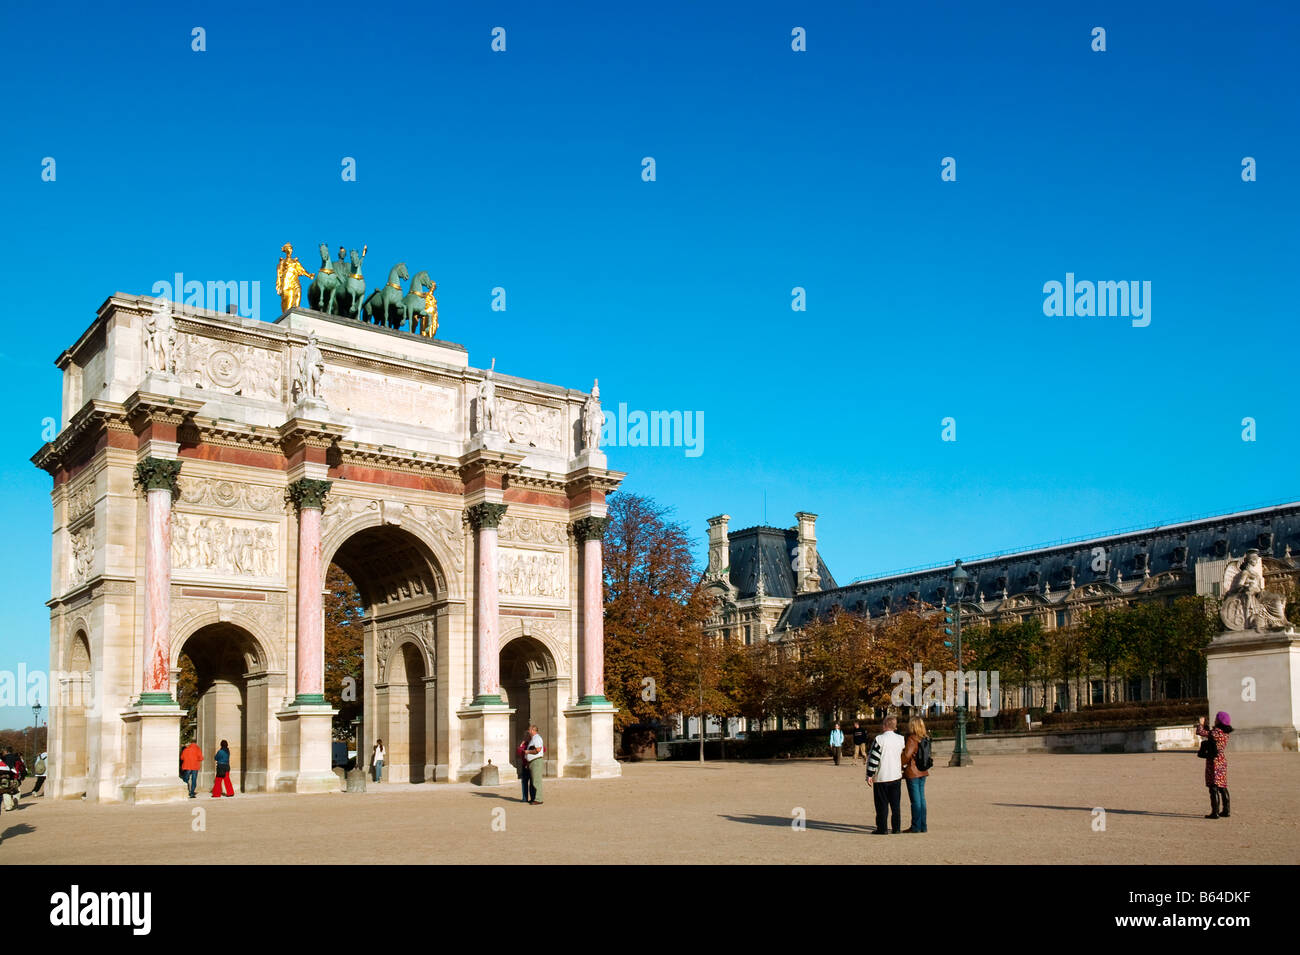 Arco di Trionfo del CARROUSEL LOUVRE Parigi Francia Foto Stock